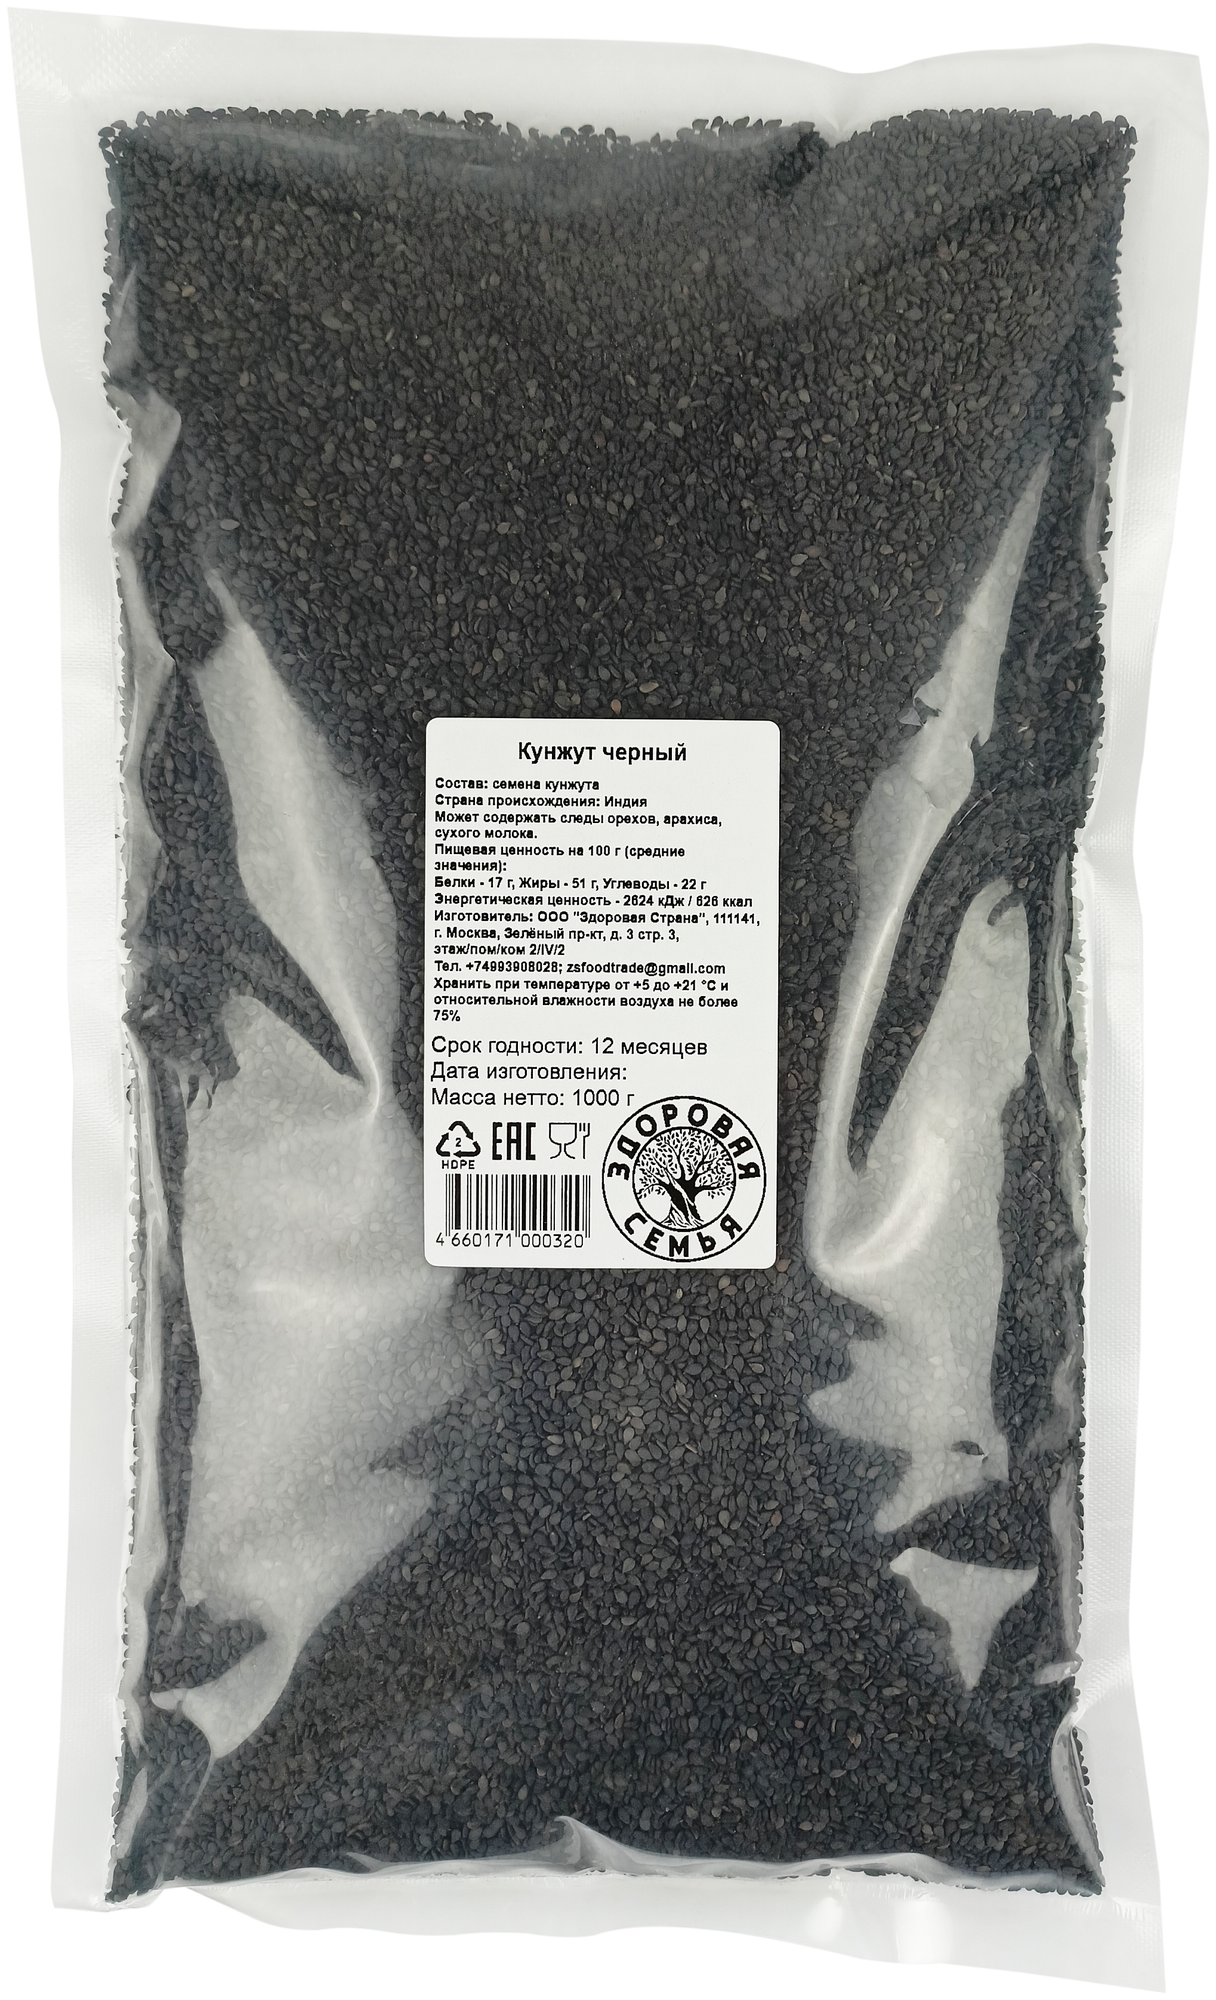 Кунжут черный Здоровая Семья семена сырые пищевые для проращивания 1 кг (1000 г)